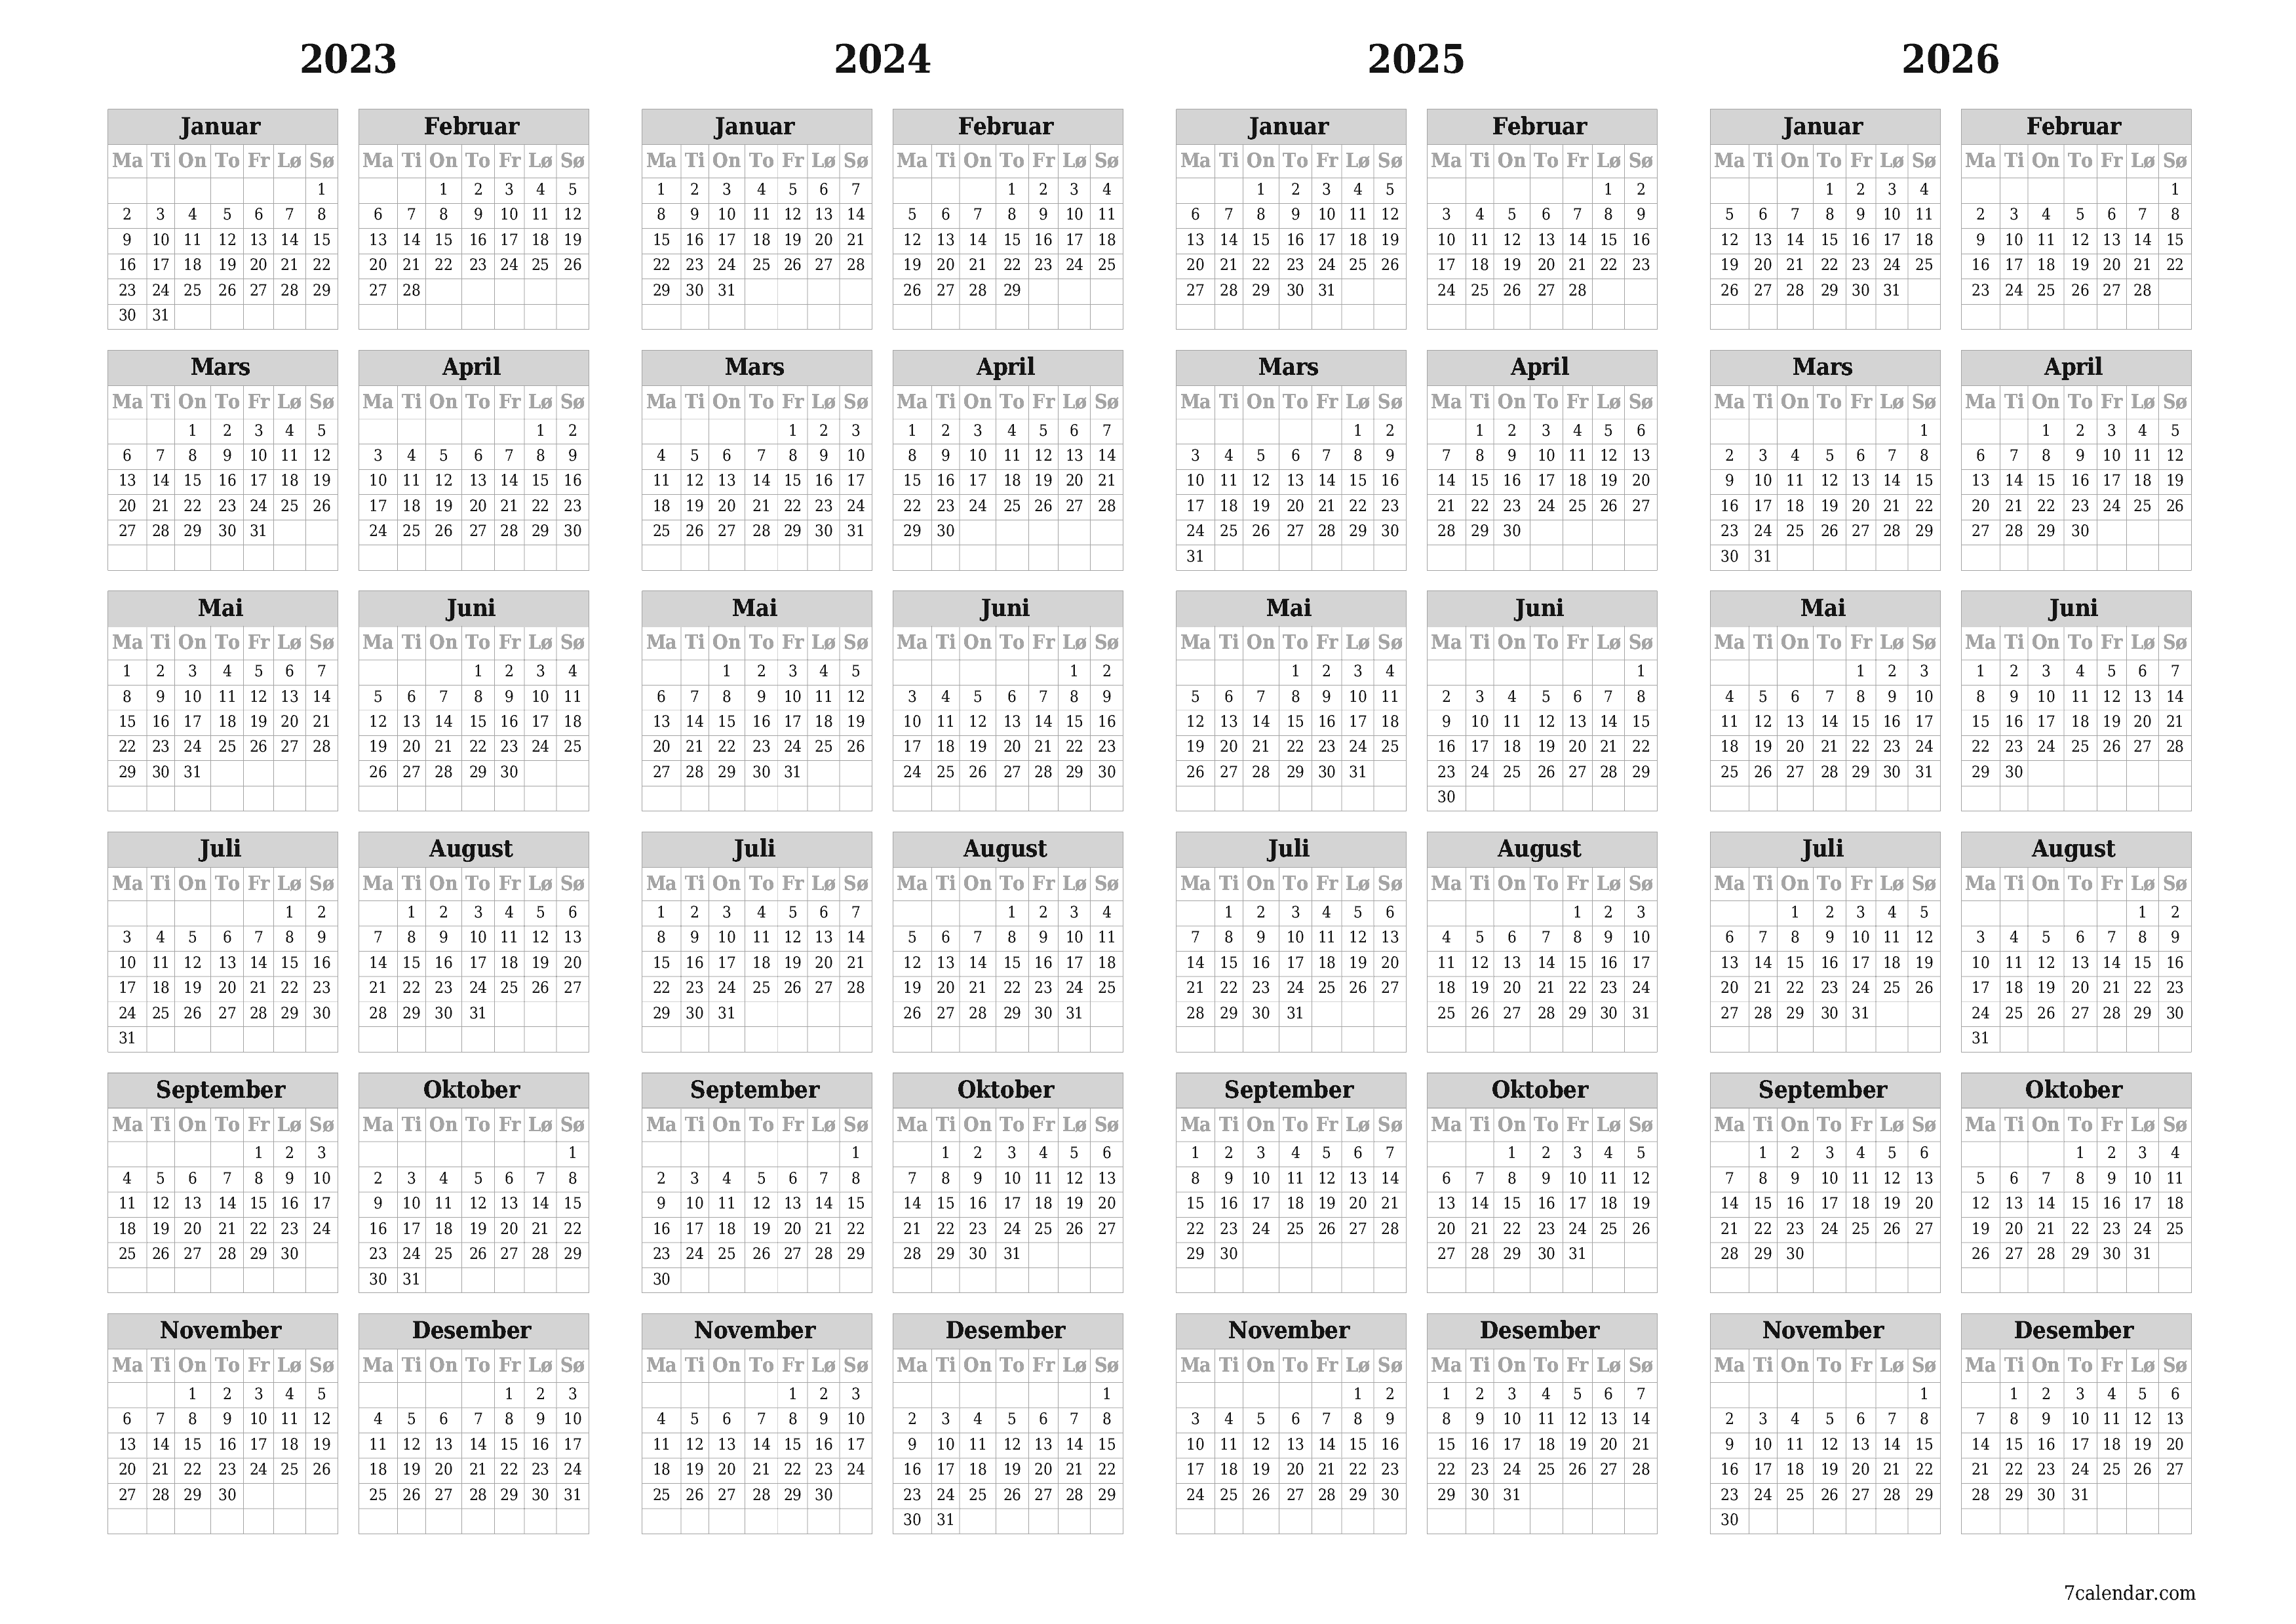 Tom årskalender for år 2023, 2024, 2025, 2026 lagre og skriv ut til PDF PNG Norwegian - 7calendar.com